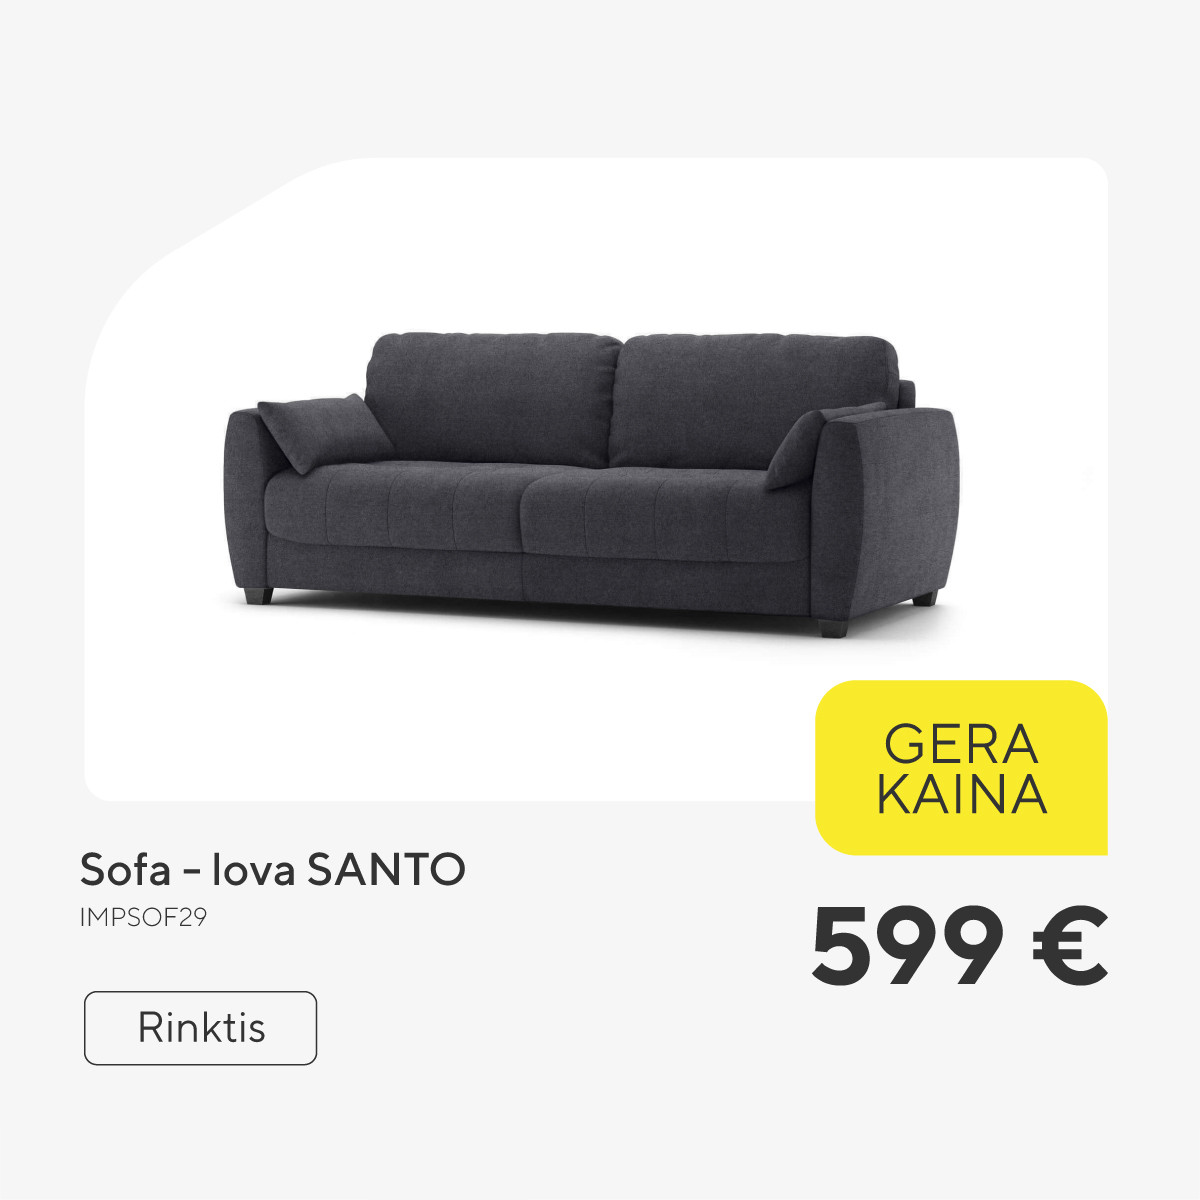 Sofa - lova SANTO